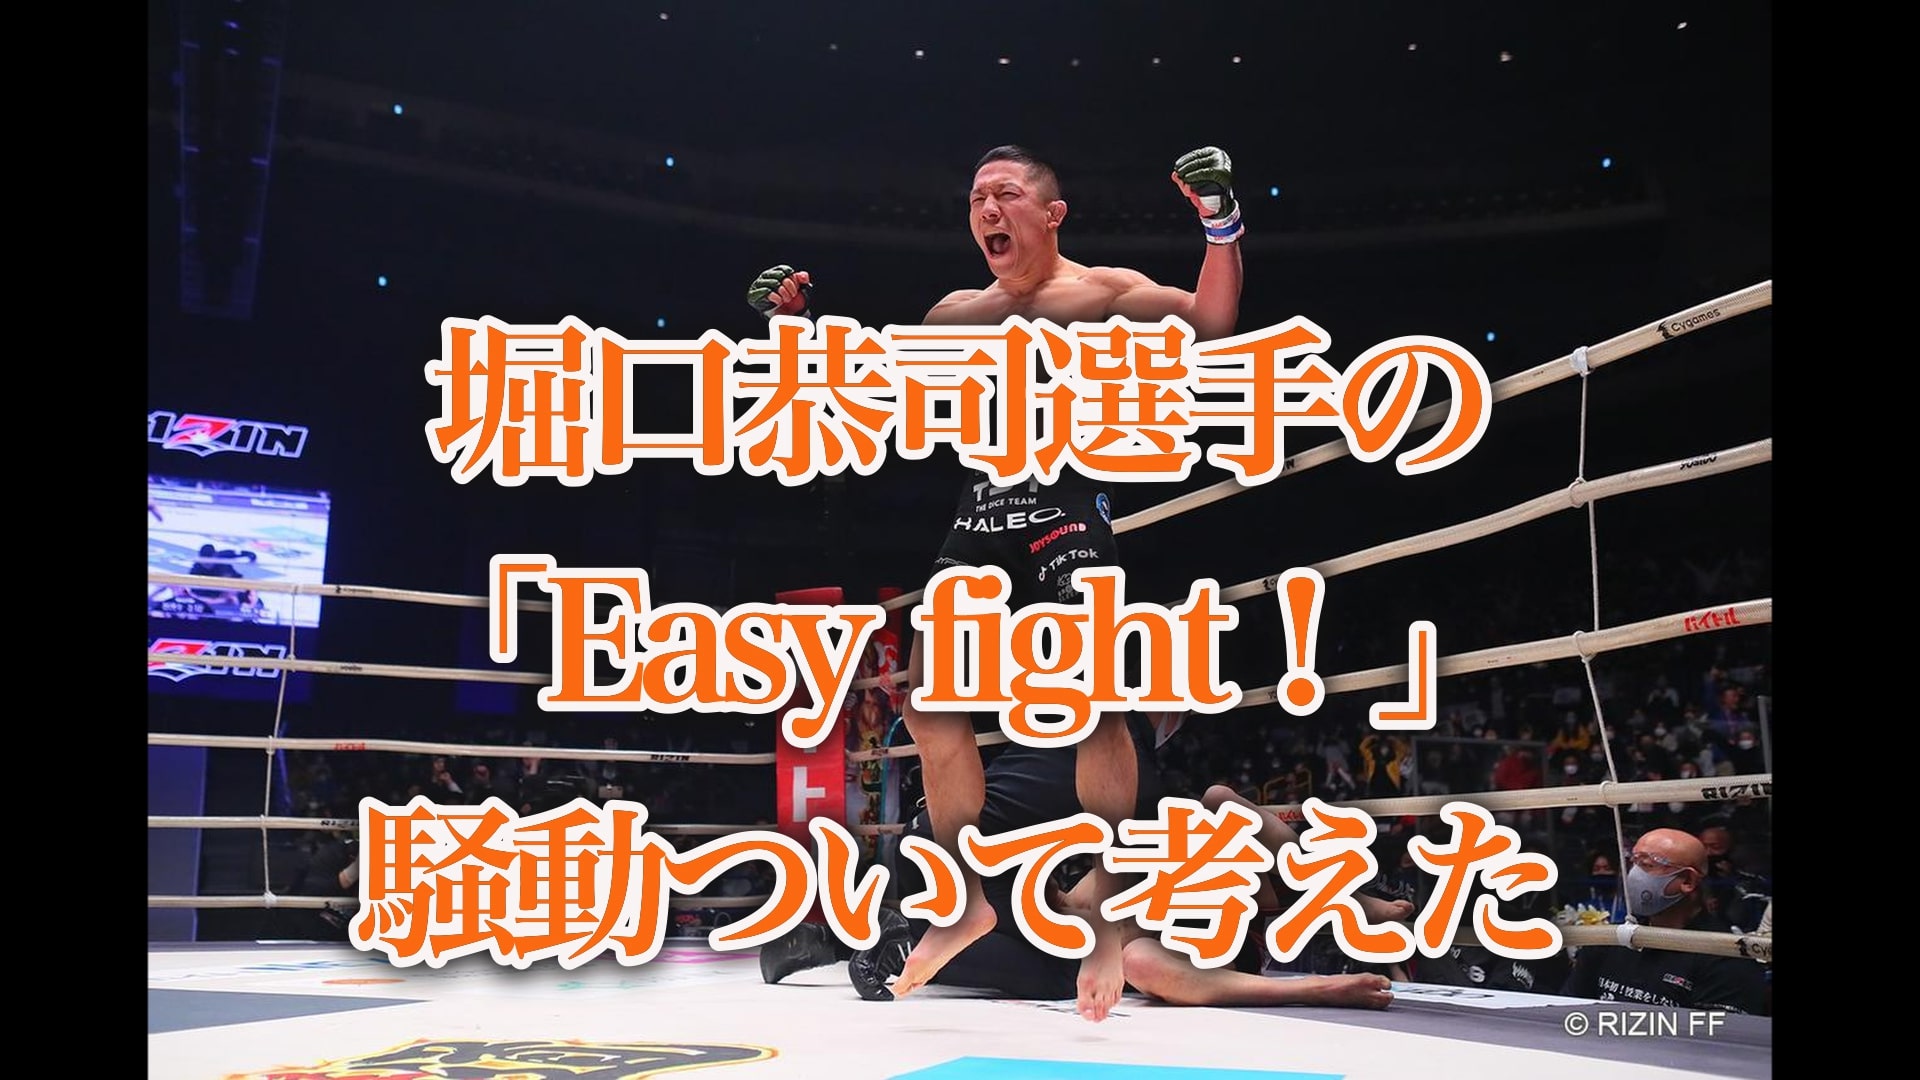 堀口恭司選手の「Easy fight！」騒動ついて考えた。